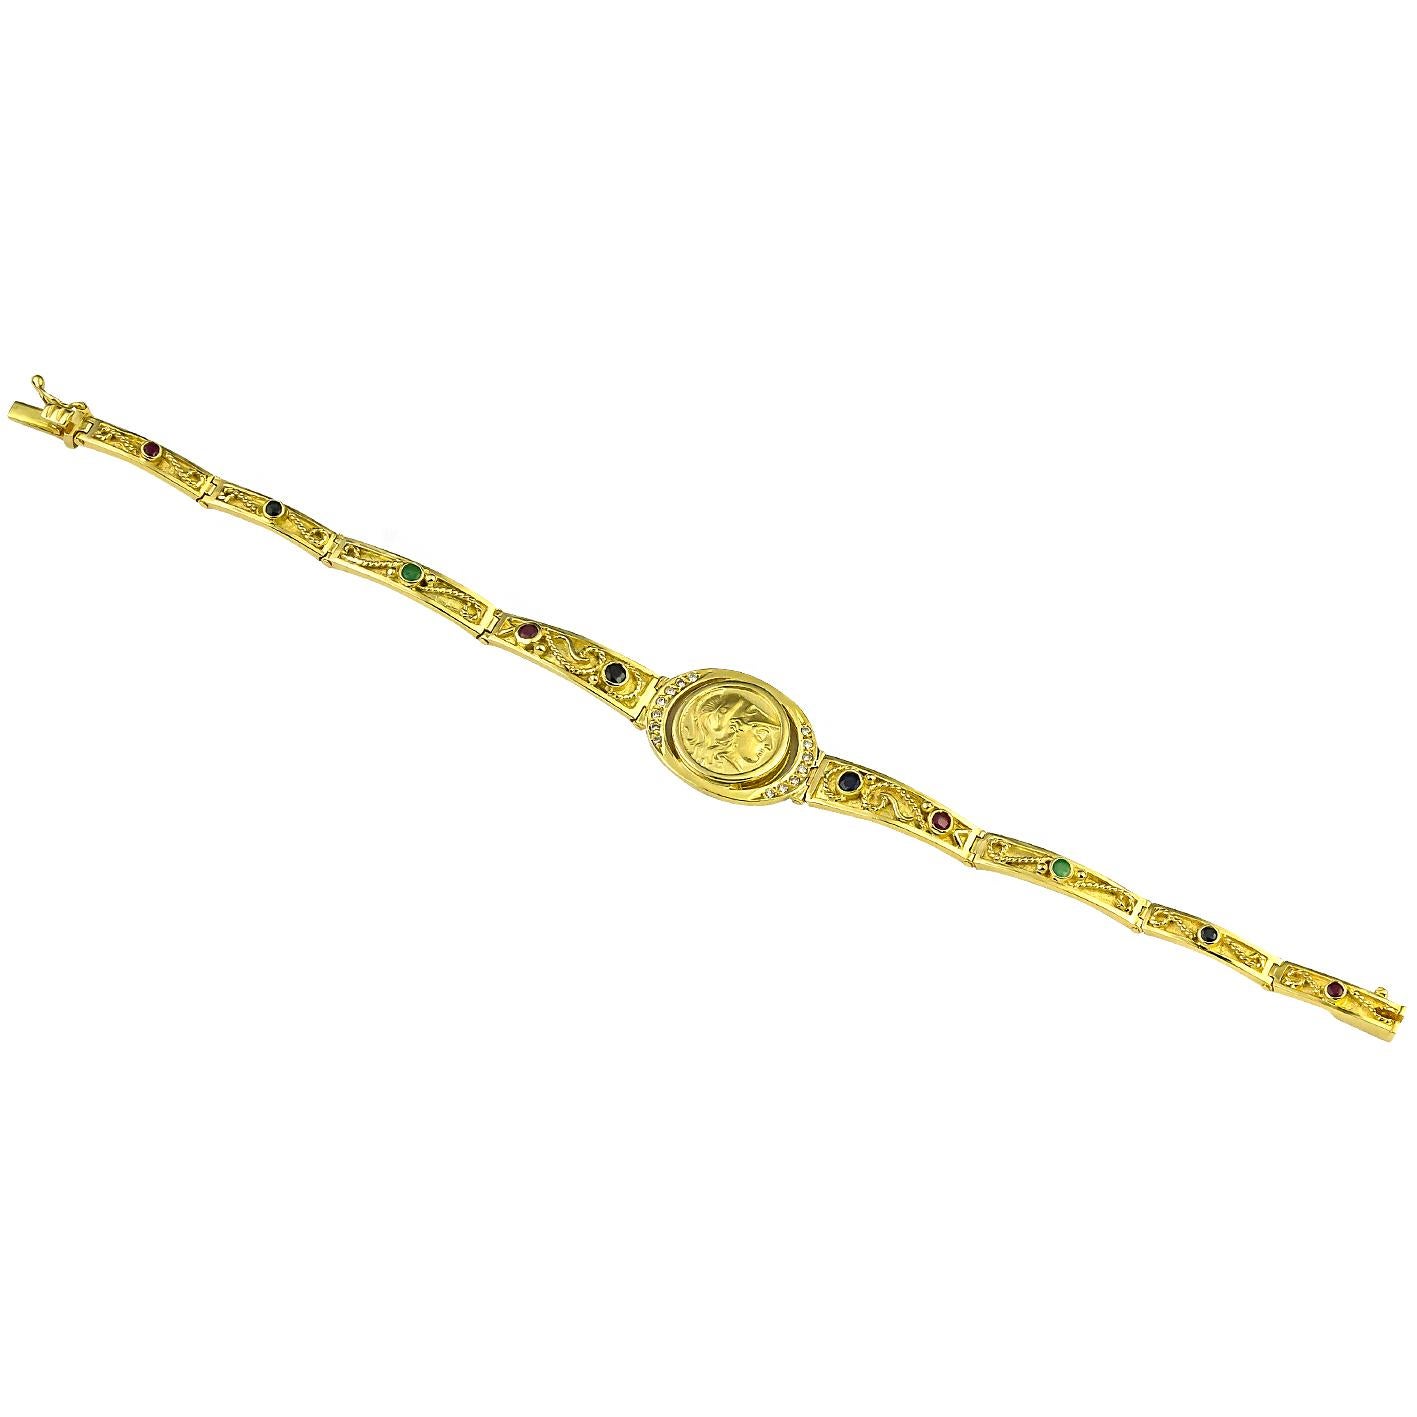 Dieses S.Georgios Athena Coin Diamond Armband ist handgefertigt aus massivem 18 Karat Gelbgold und ist mikroskopisch verziert mit Granulation - Gelbgoldperlen und Drähten. Granulierte Details kontrastieren mit einem Hintergrund aus byzantinischem